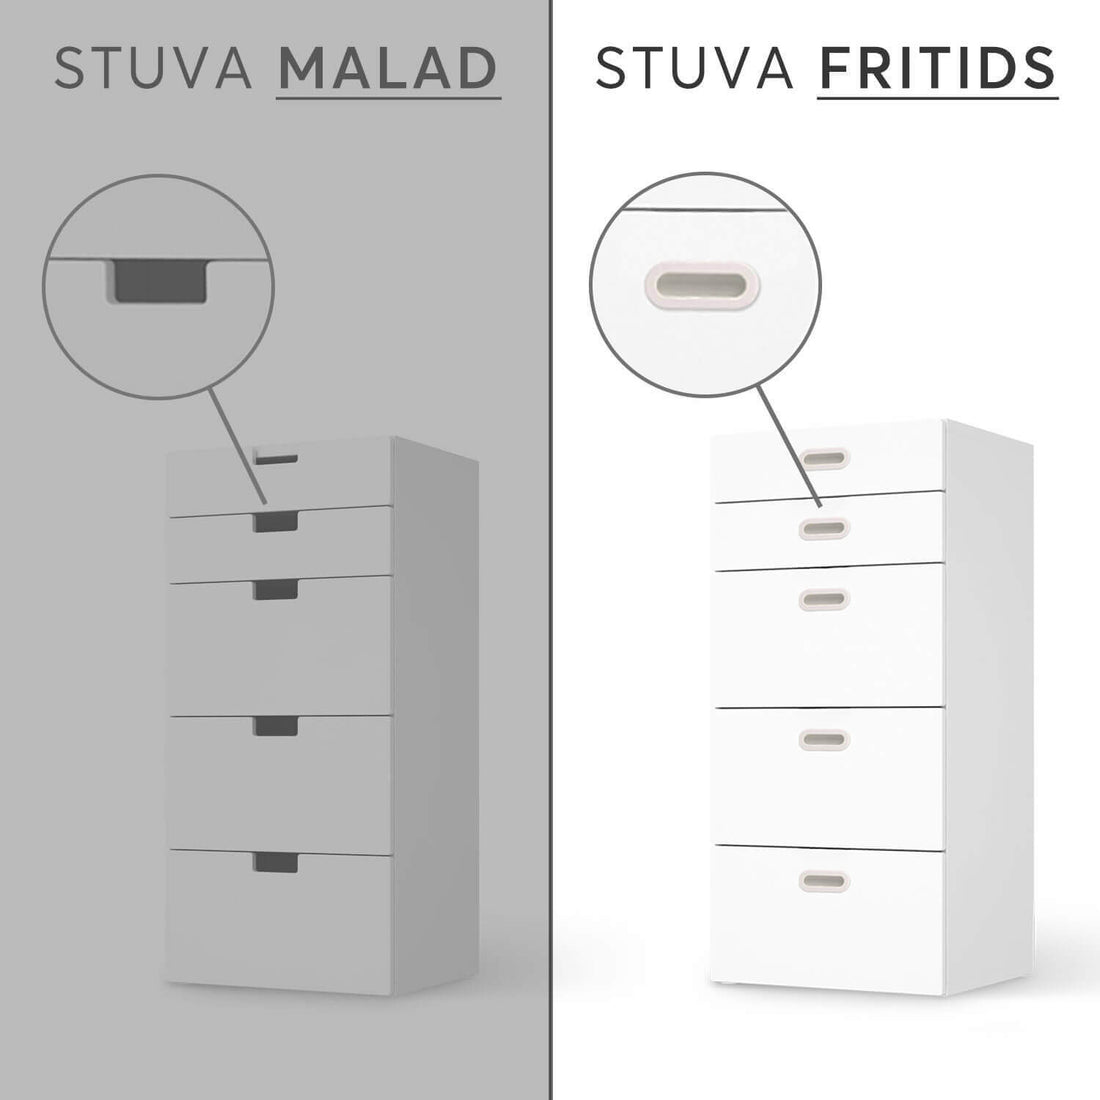 Vergleich IKEA Stuva Fritids / Malad - Footballmania